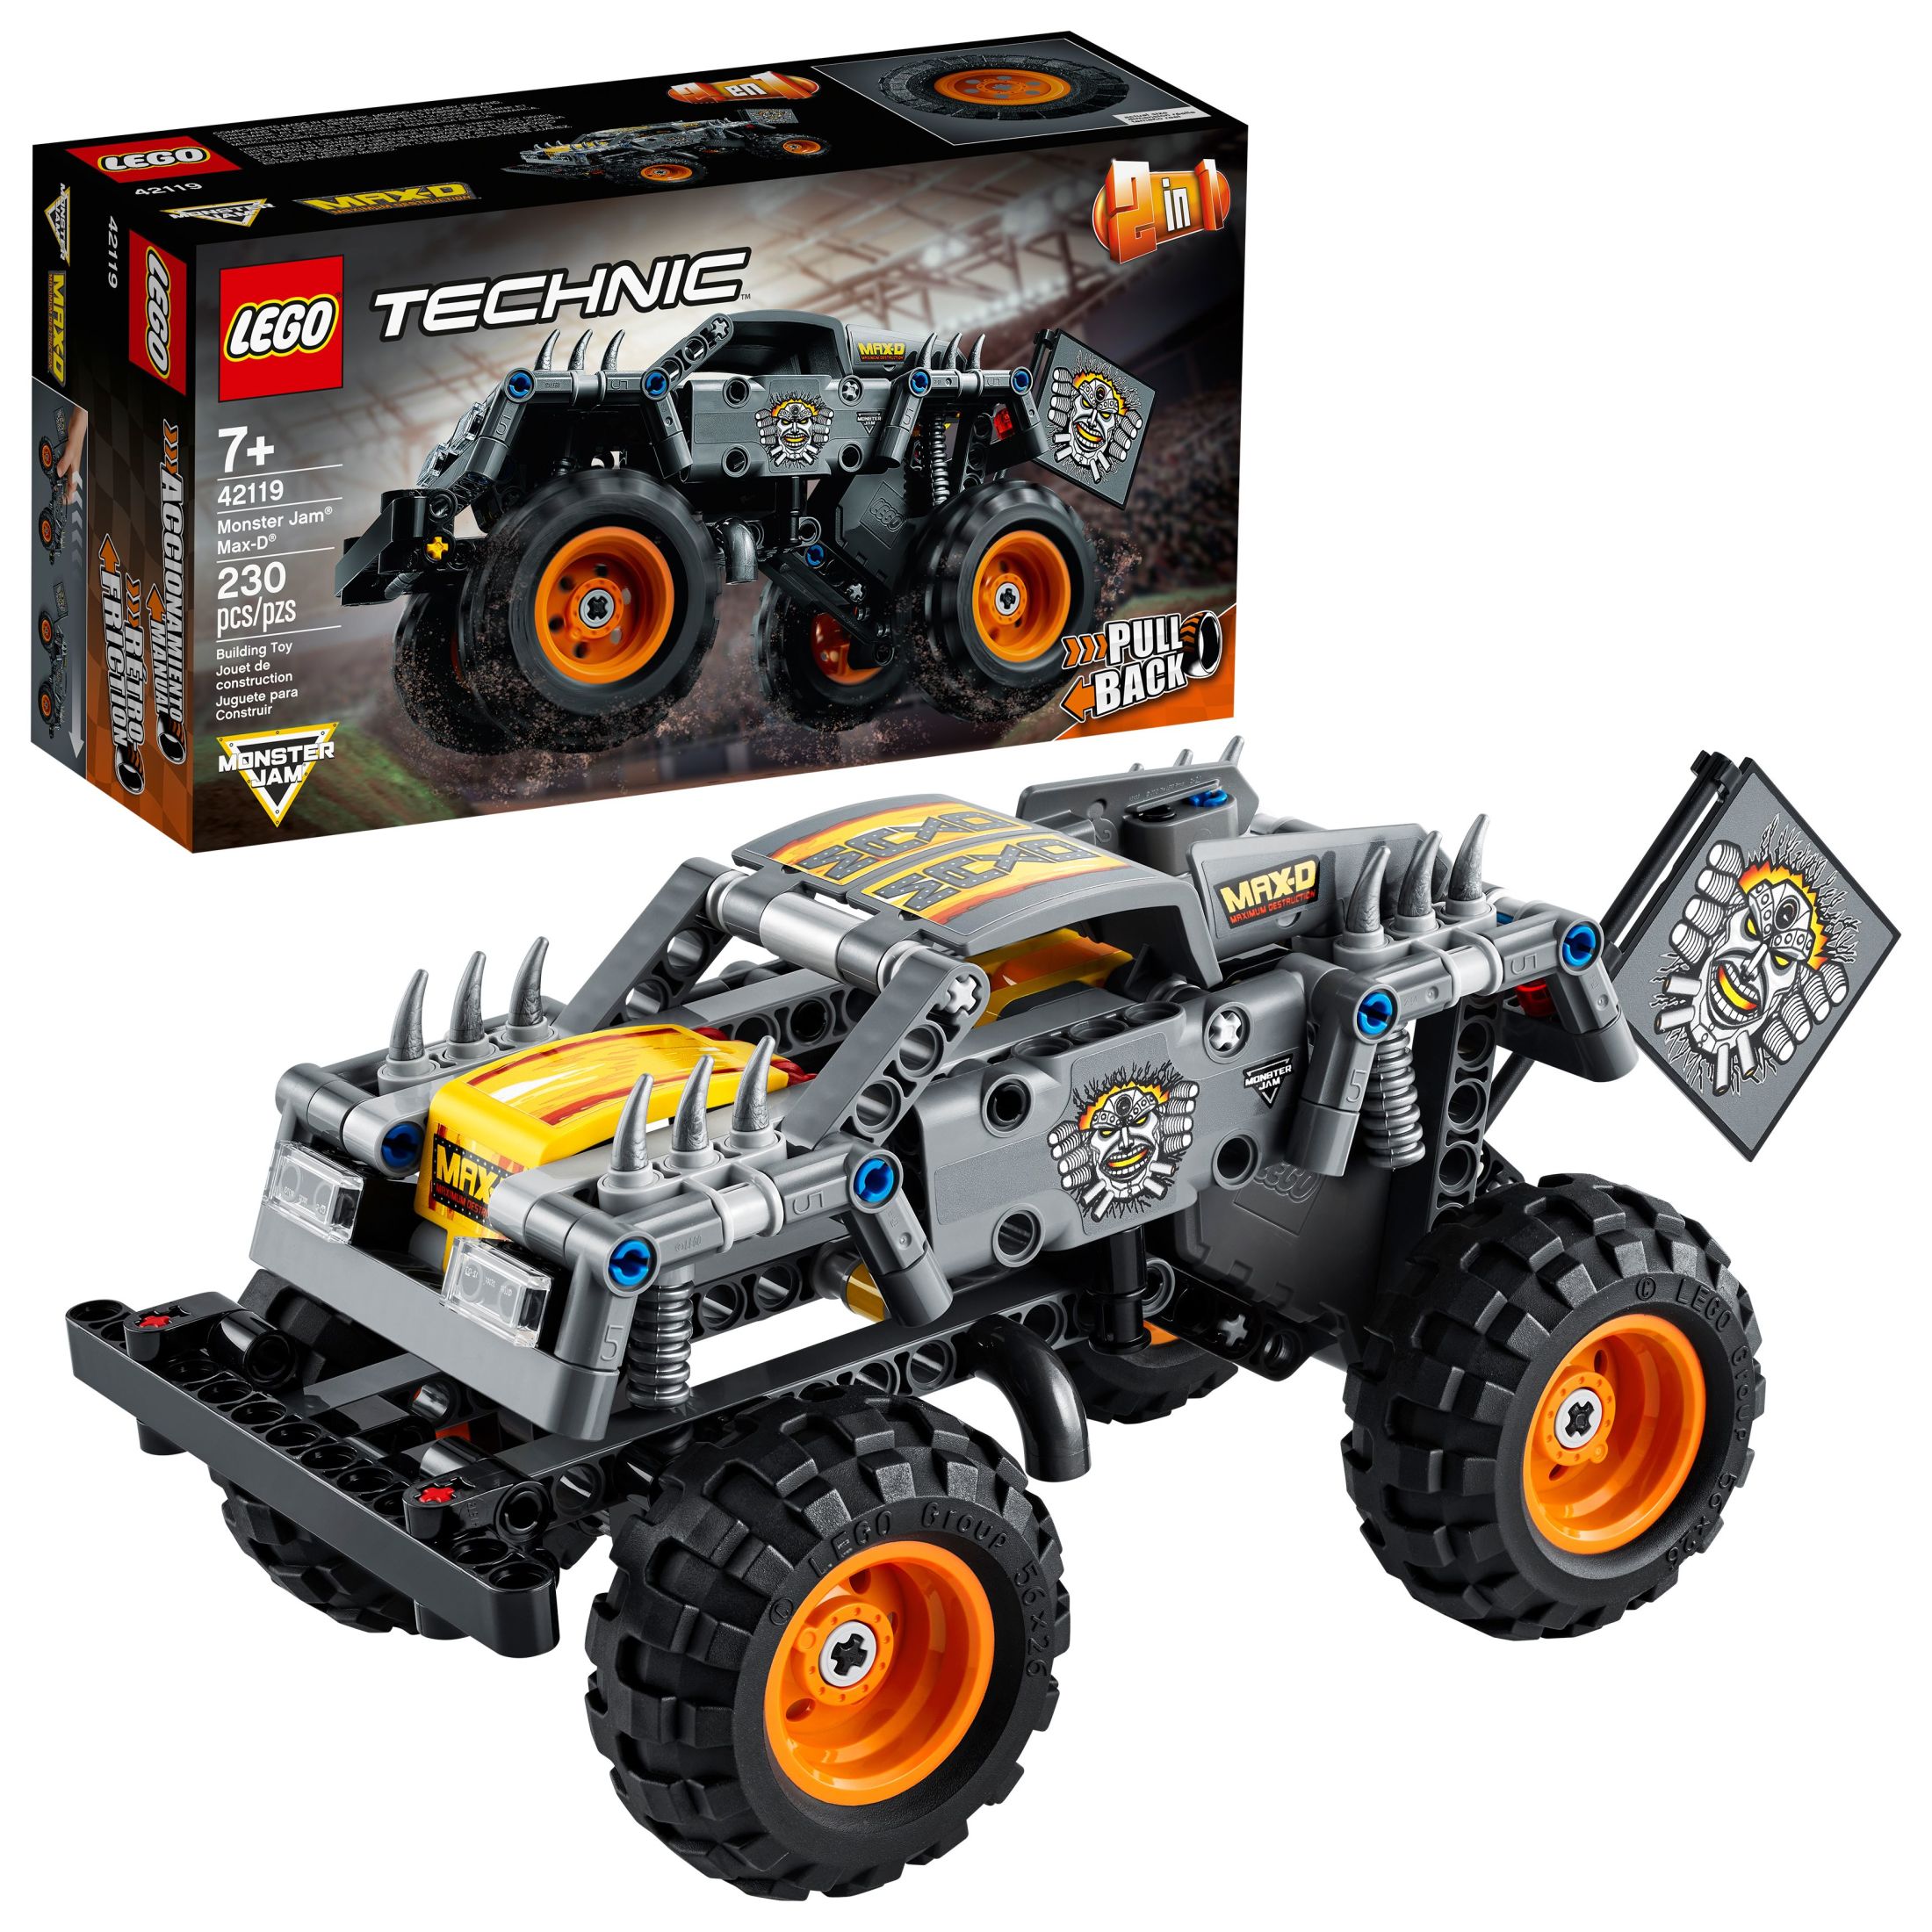 LEGO Technic Monster Jam Max-D 42119 Model Kit for Kids Who Love Monster Trucks (230 Pieces) - image 1 of 8